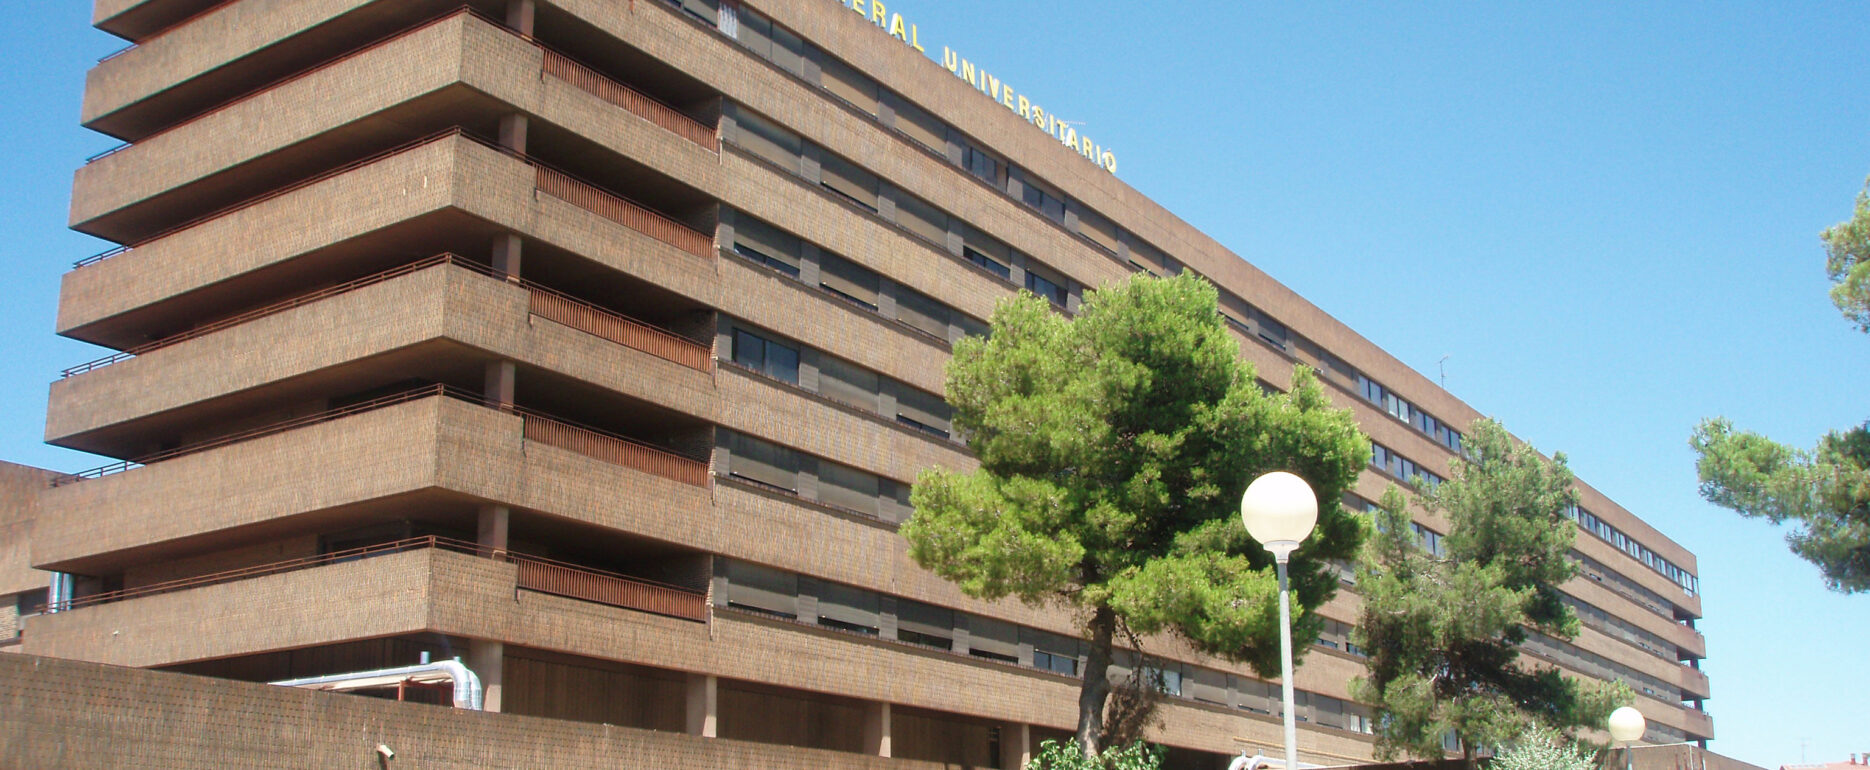 Hospital de Albacete al que fue llevado el joven al que acababan de apuñalar